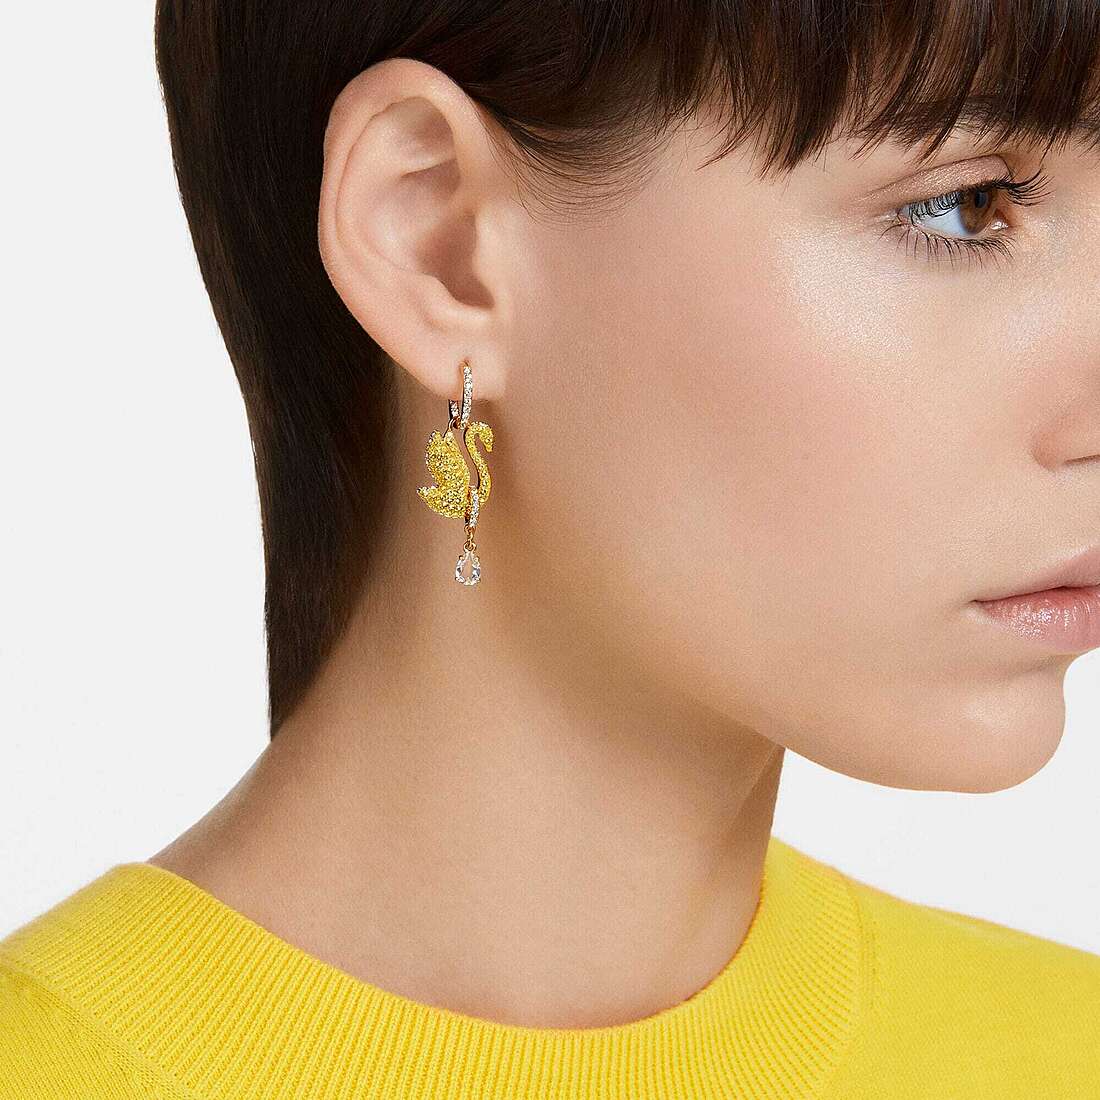 Swarovski earrings woman 5647543 wearing